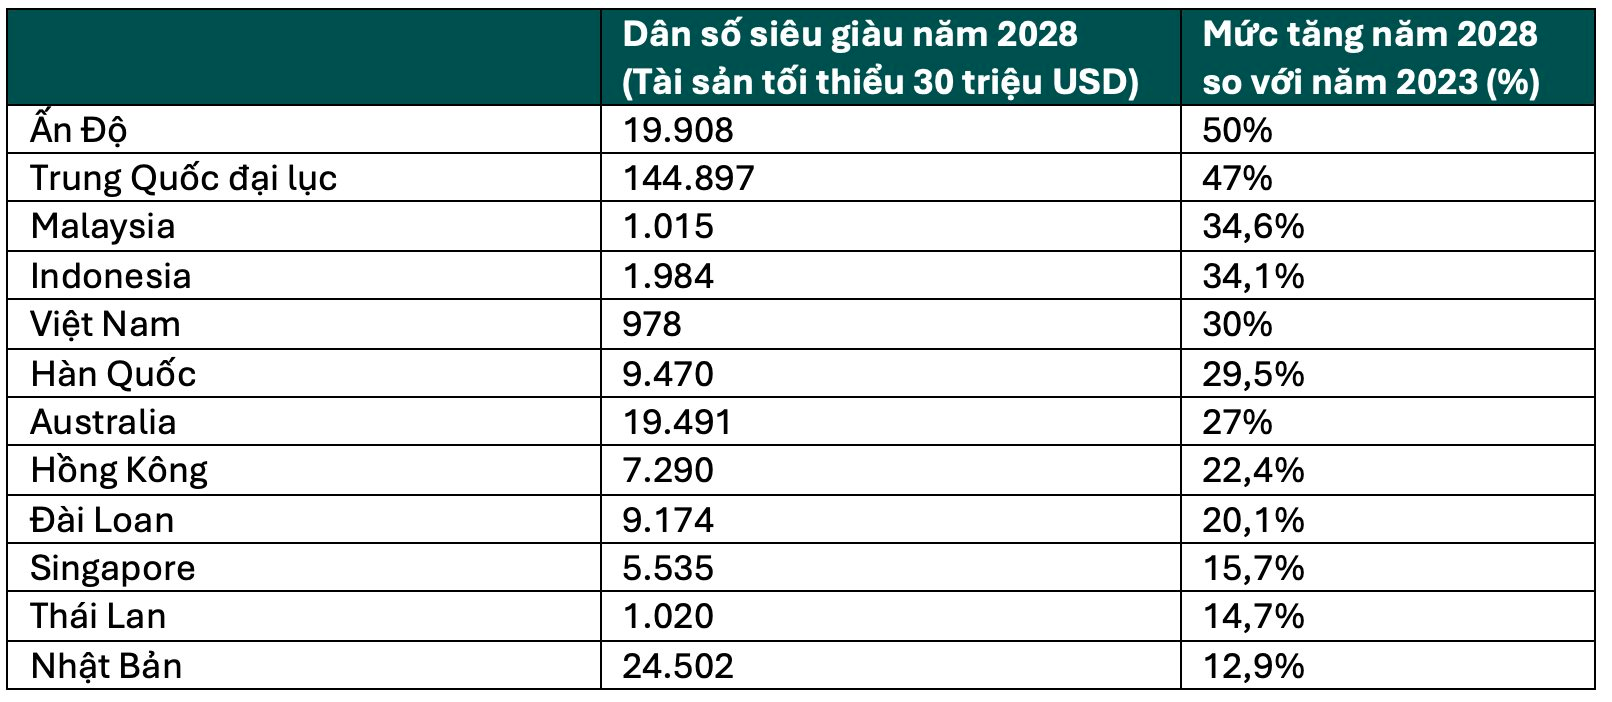 Có 752 người siêu giàu với tốc độ tăng trưởng gấp 3 Thái Lan, Việt Nam thành miền đất hứa 'dụ' loạt thương hiệu xa xỉ Cartier, Longines, Bertazzoni… ồ ạt “đổ bộ”- Ảnh 1.